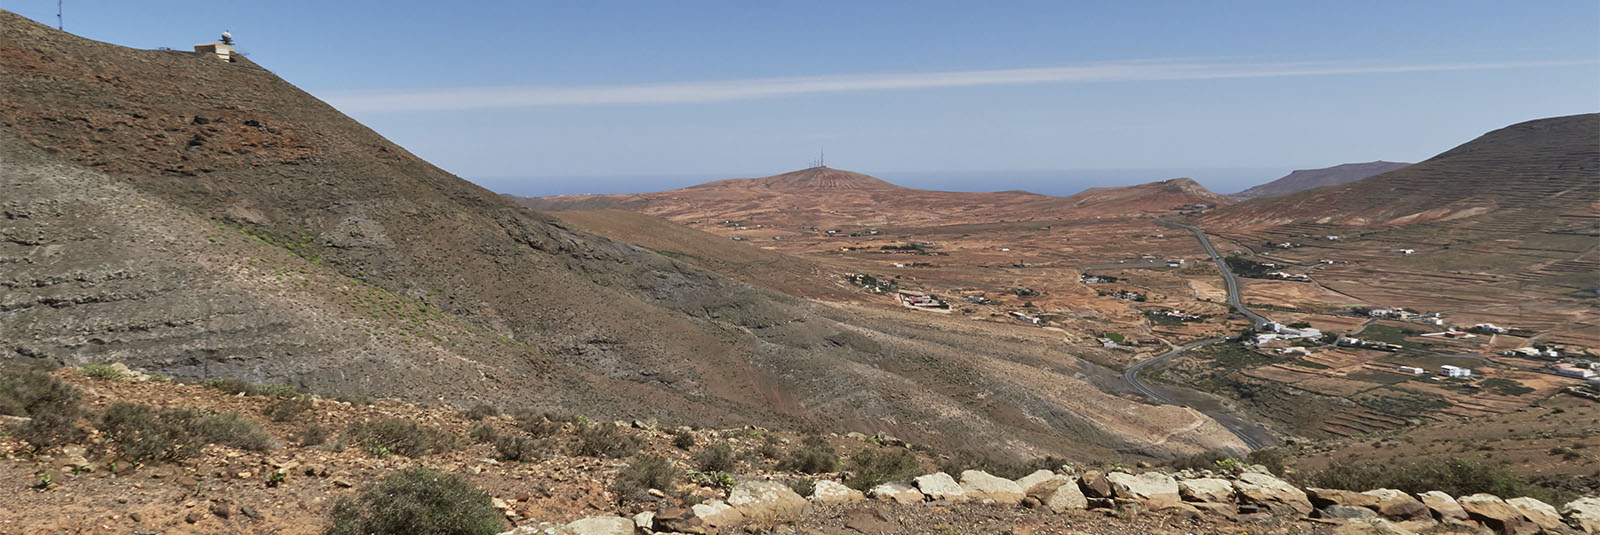 Blick vom Aussichtspunkt 1 auf die Radarstation am Montaña de la Muda und La Matilla.